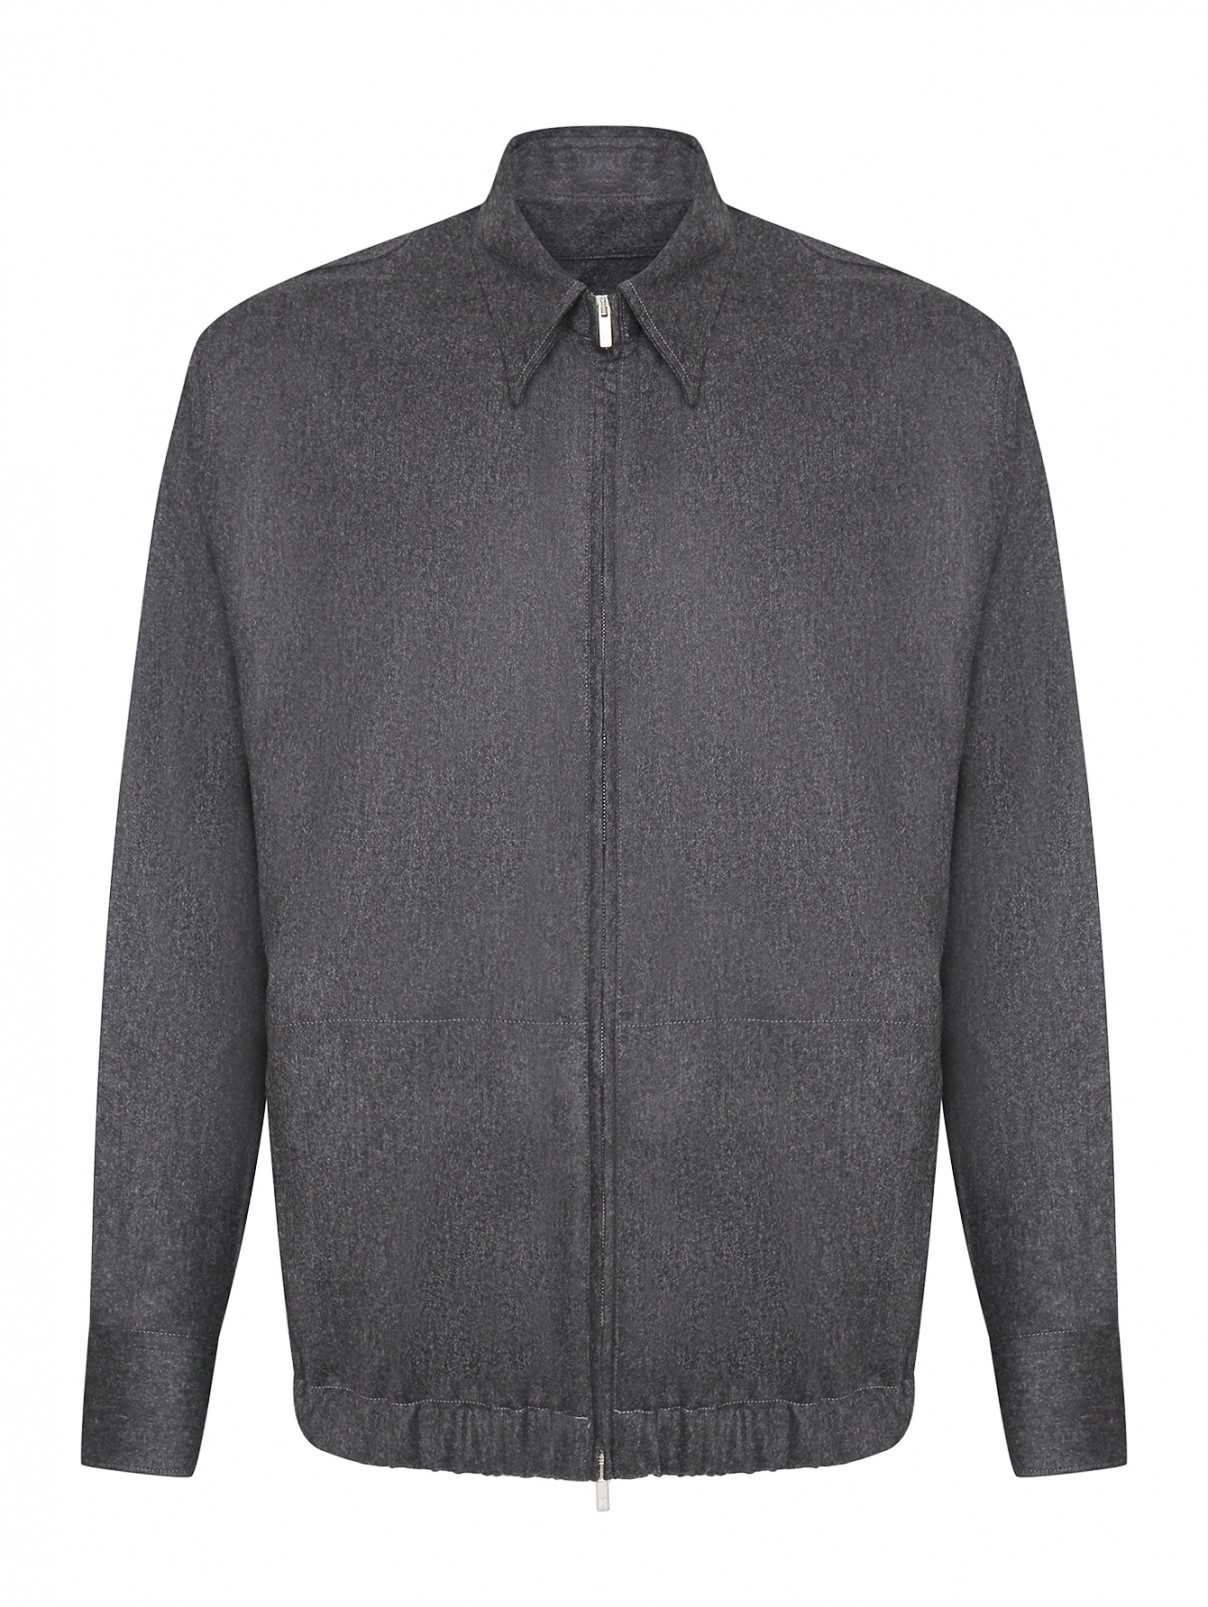 Куртка из шерсти на молнии PT Torino  –  Общий вид  – Цвет:  Серый